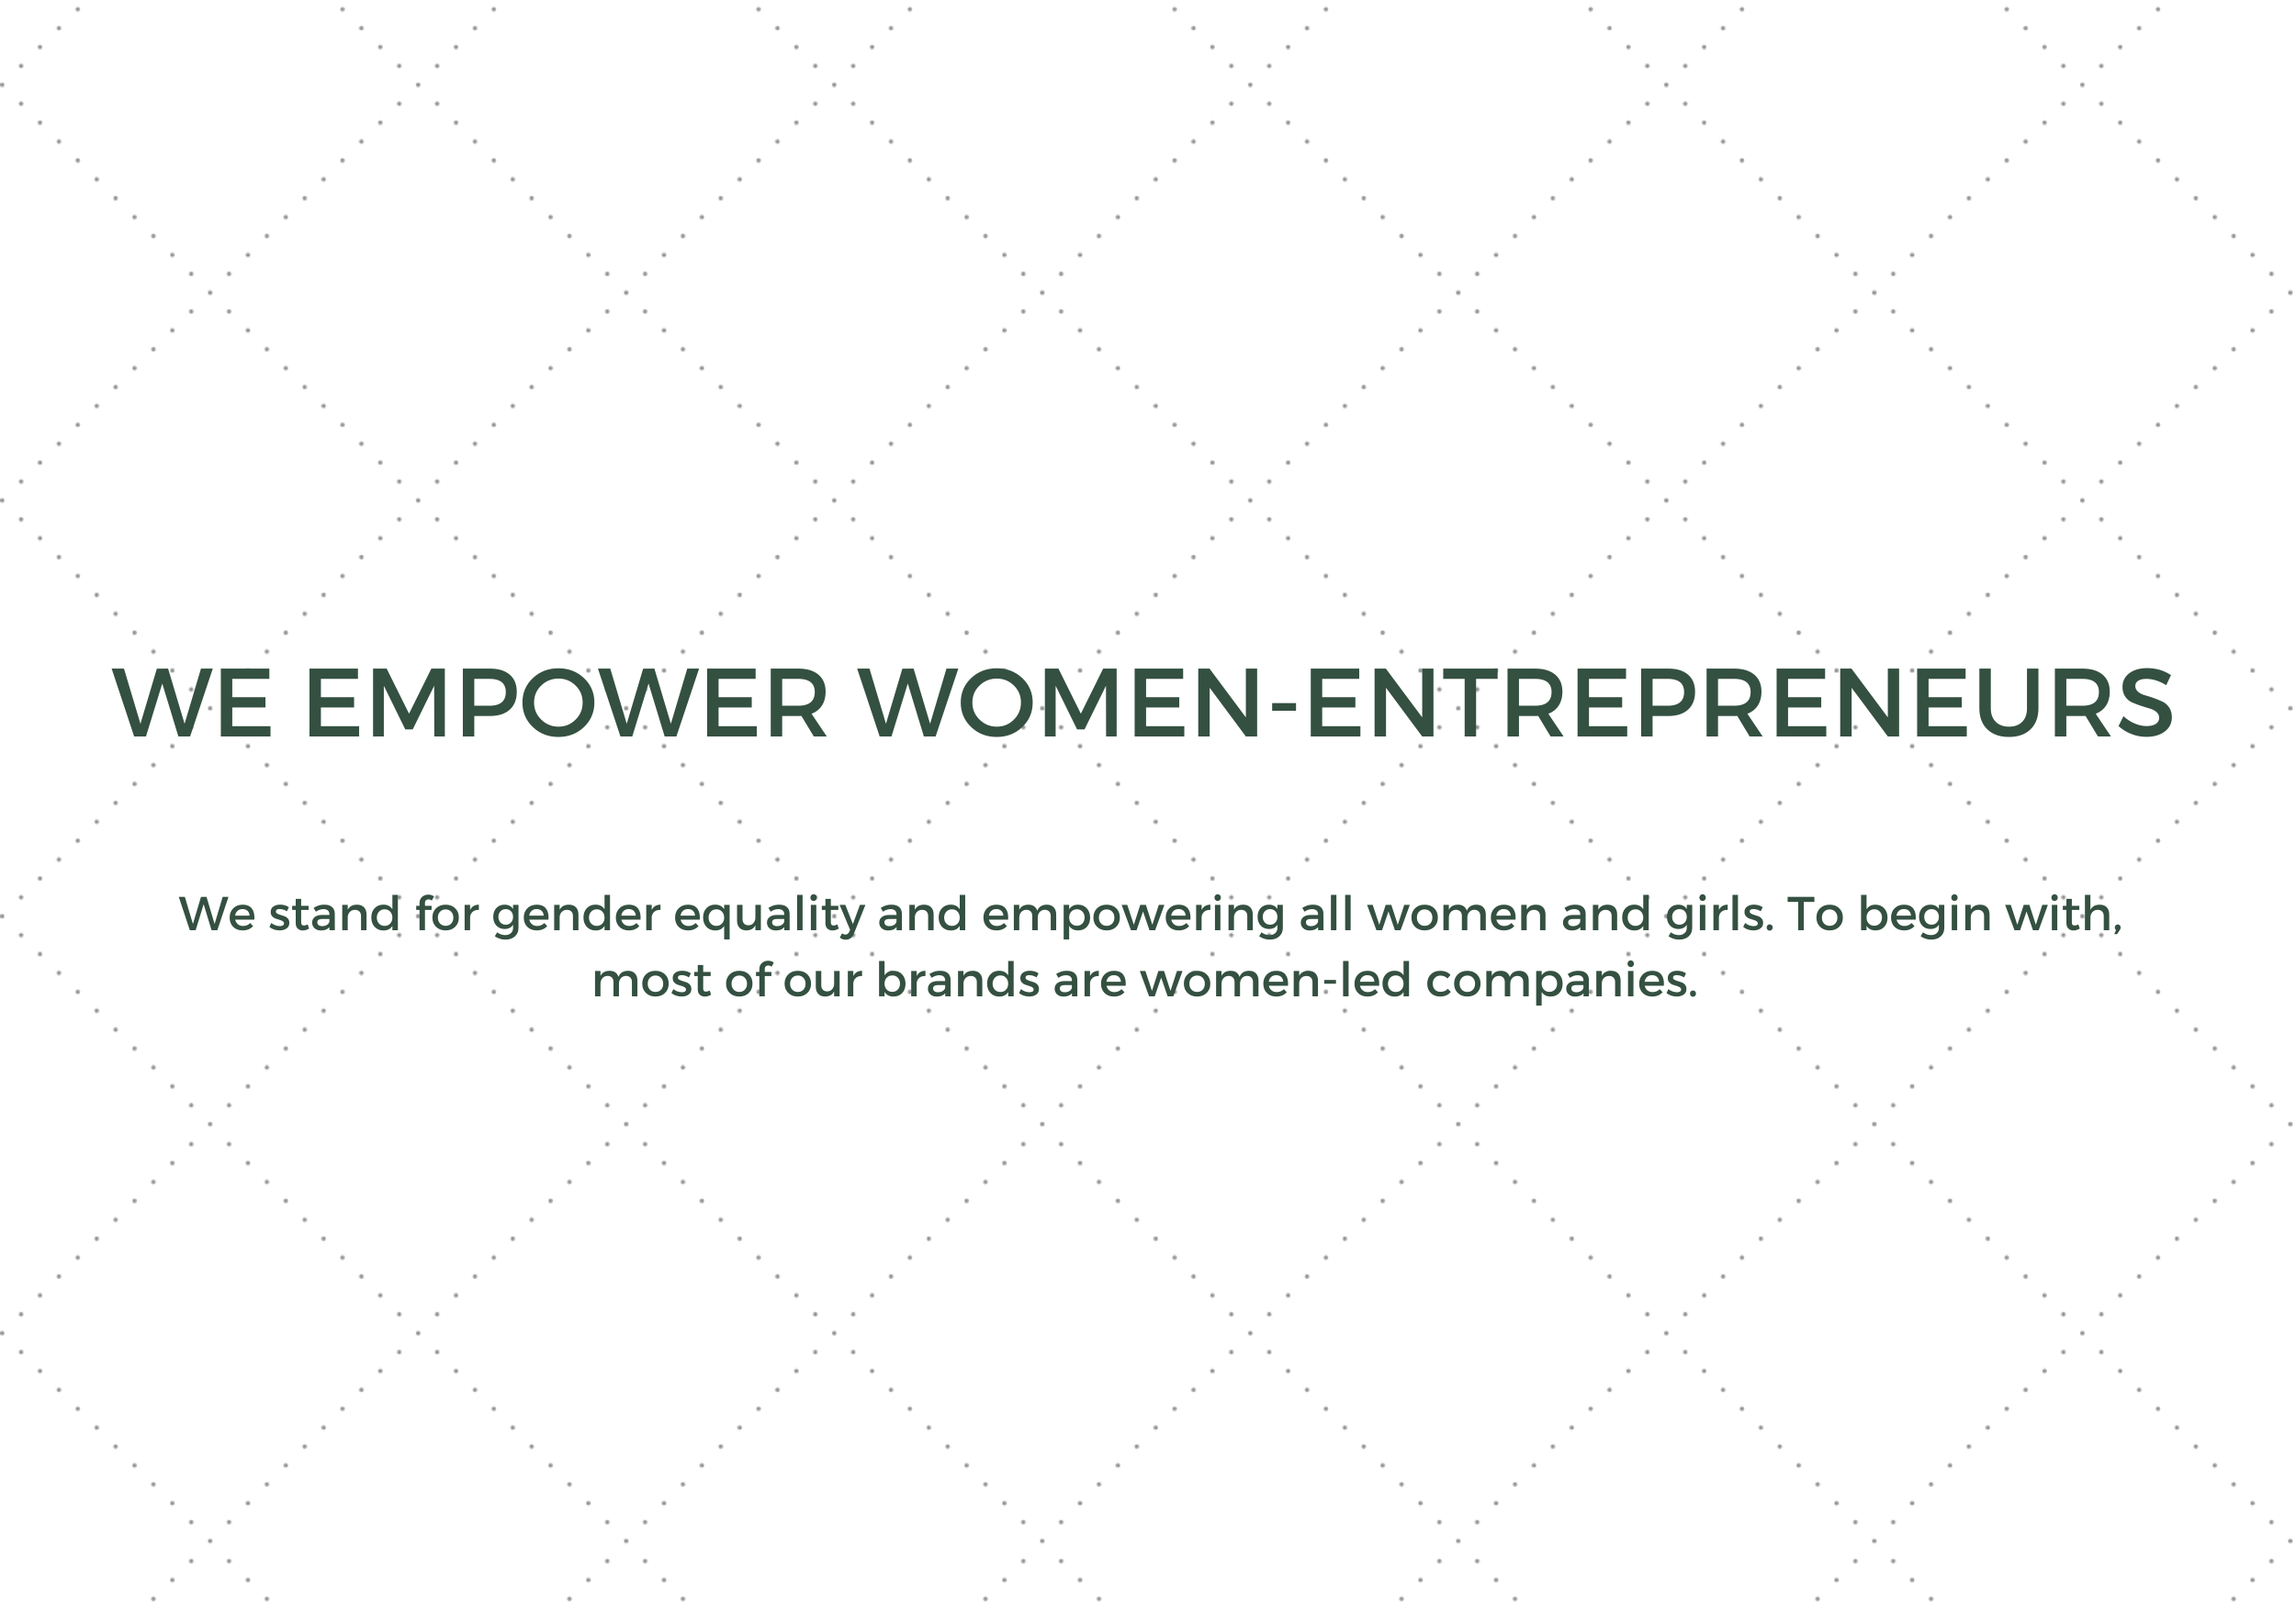 we empower women-entrepreneurs